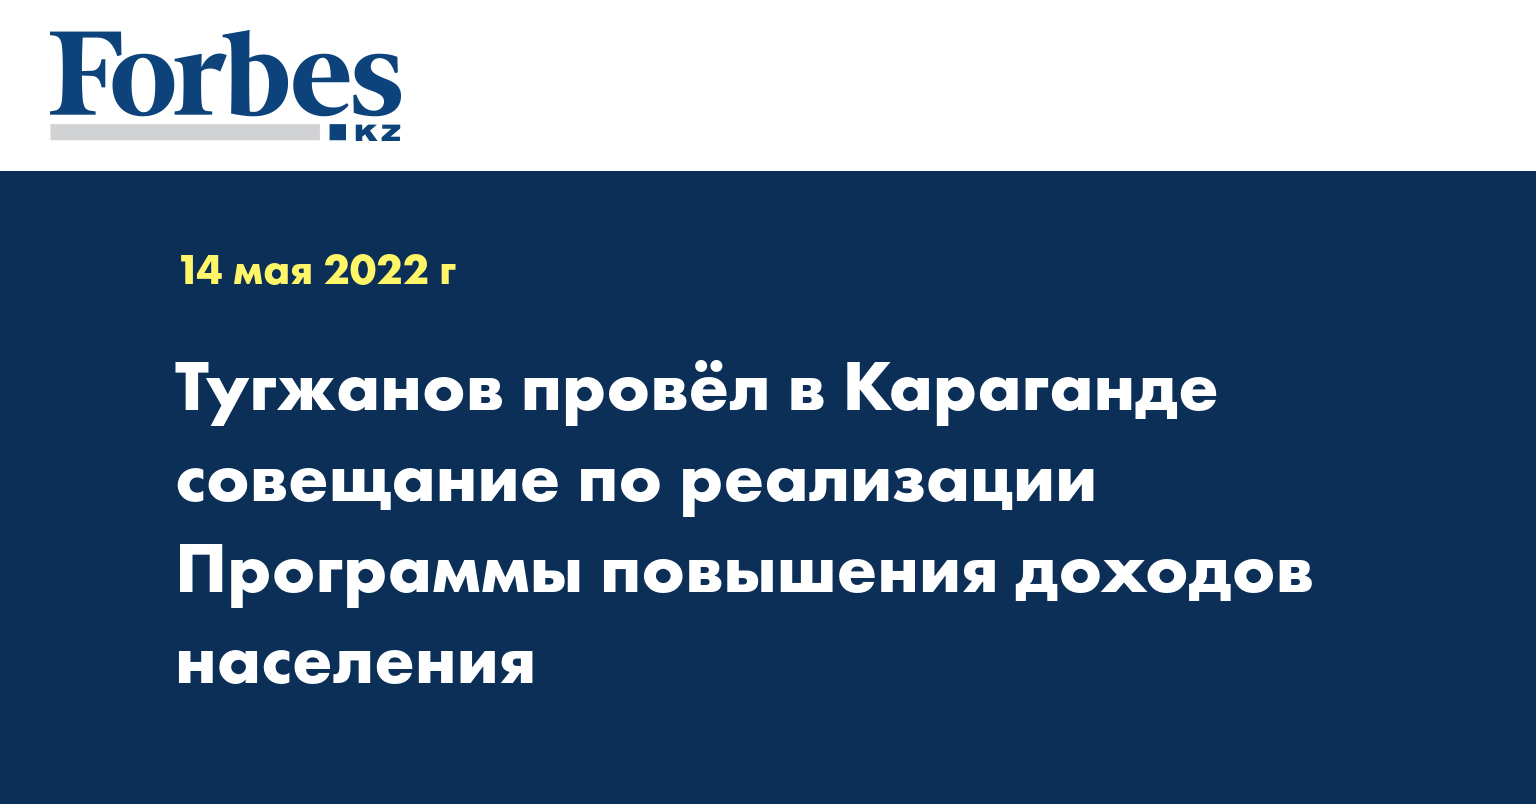 Тугжанов провёл в Караганде совещание по реализации Программы повышения доходов населения